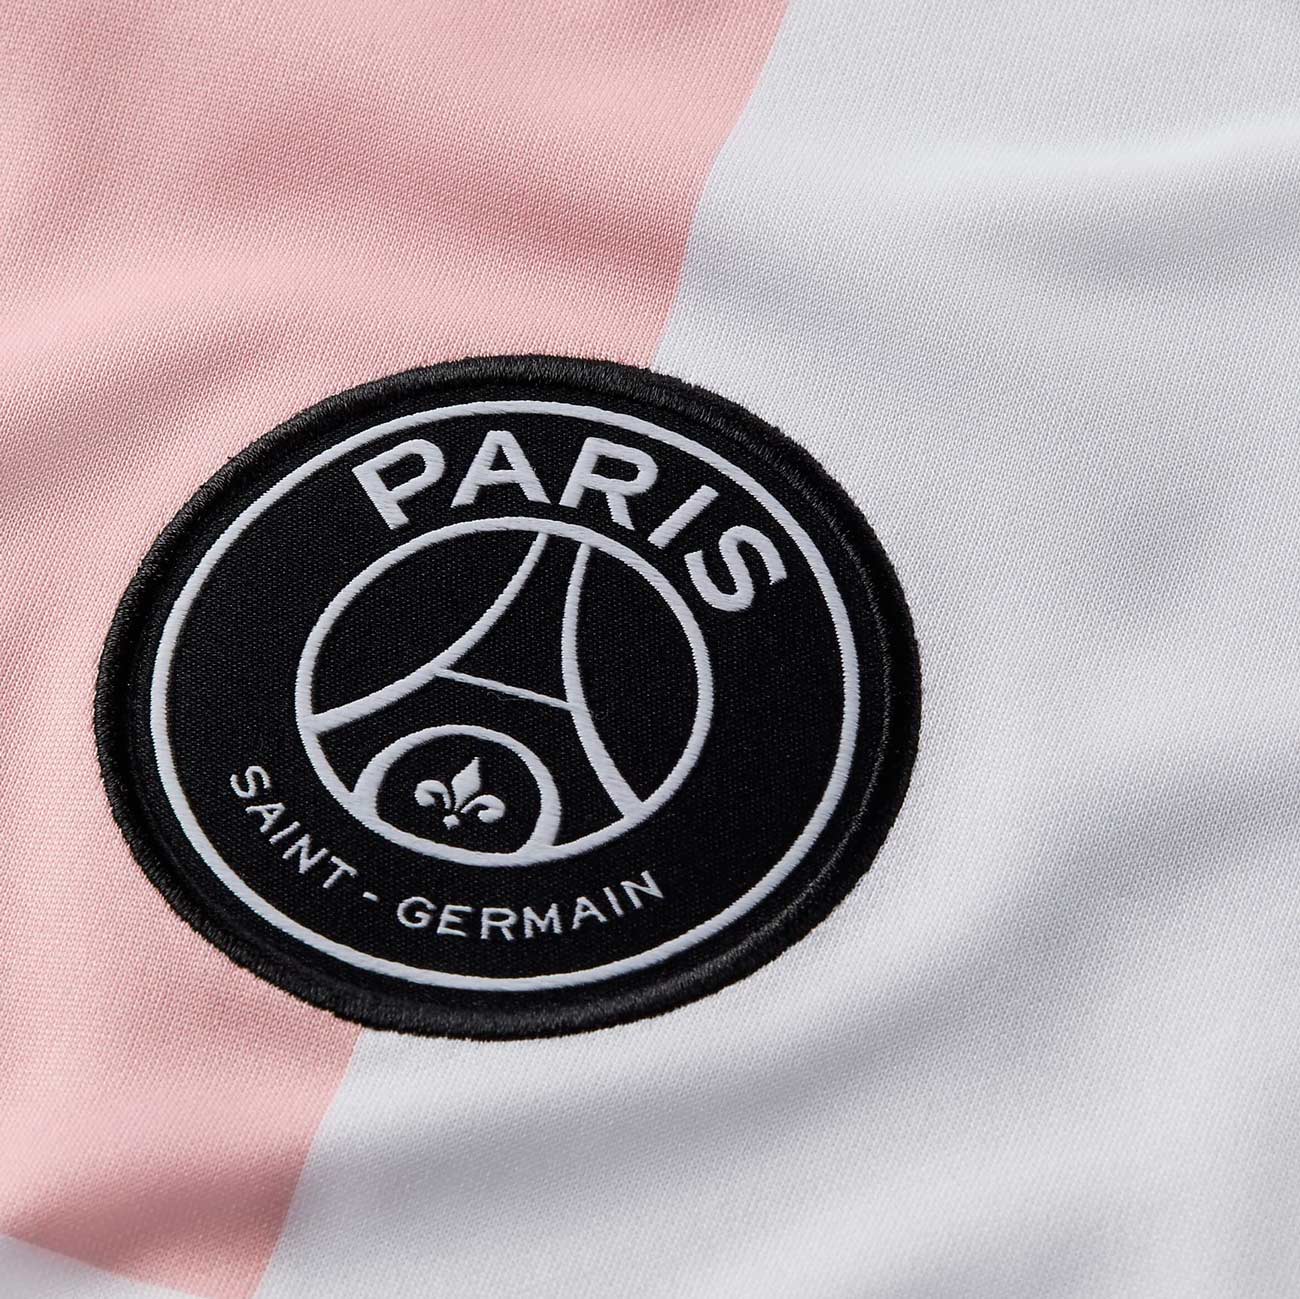 Seconda maglia PSG 2021-2022 con un rosanero mai visto prima!